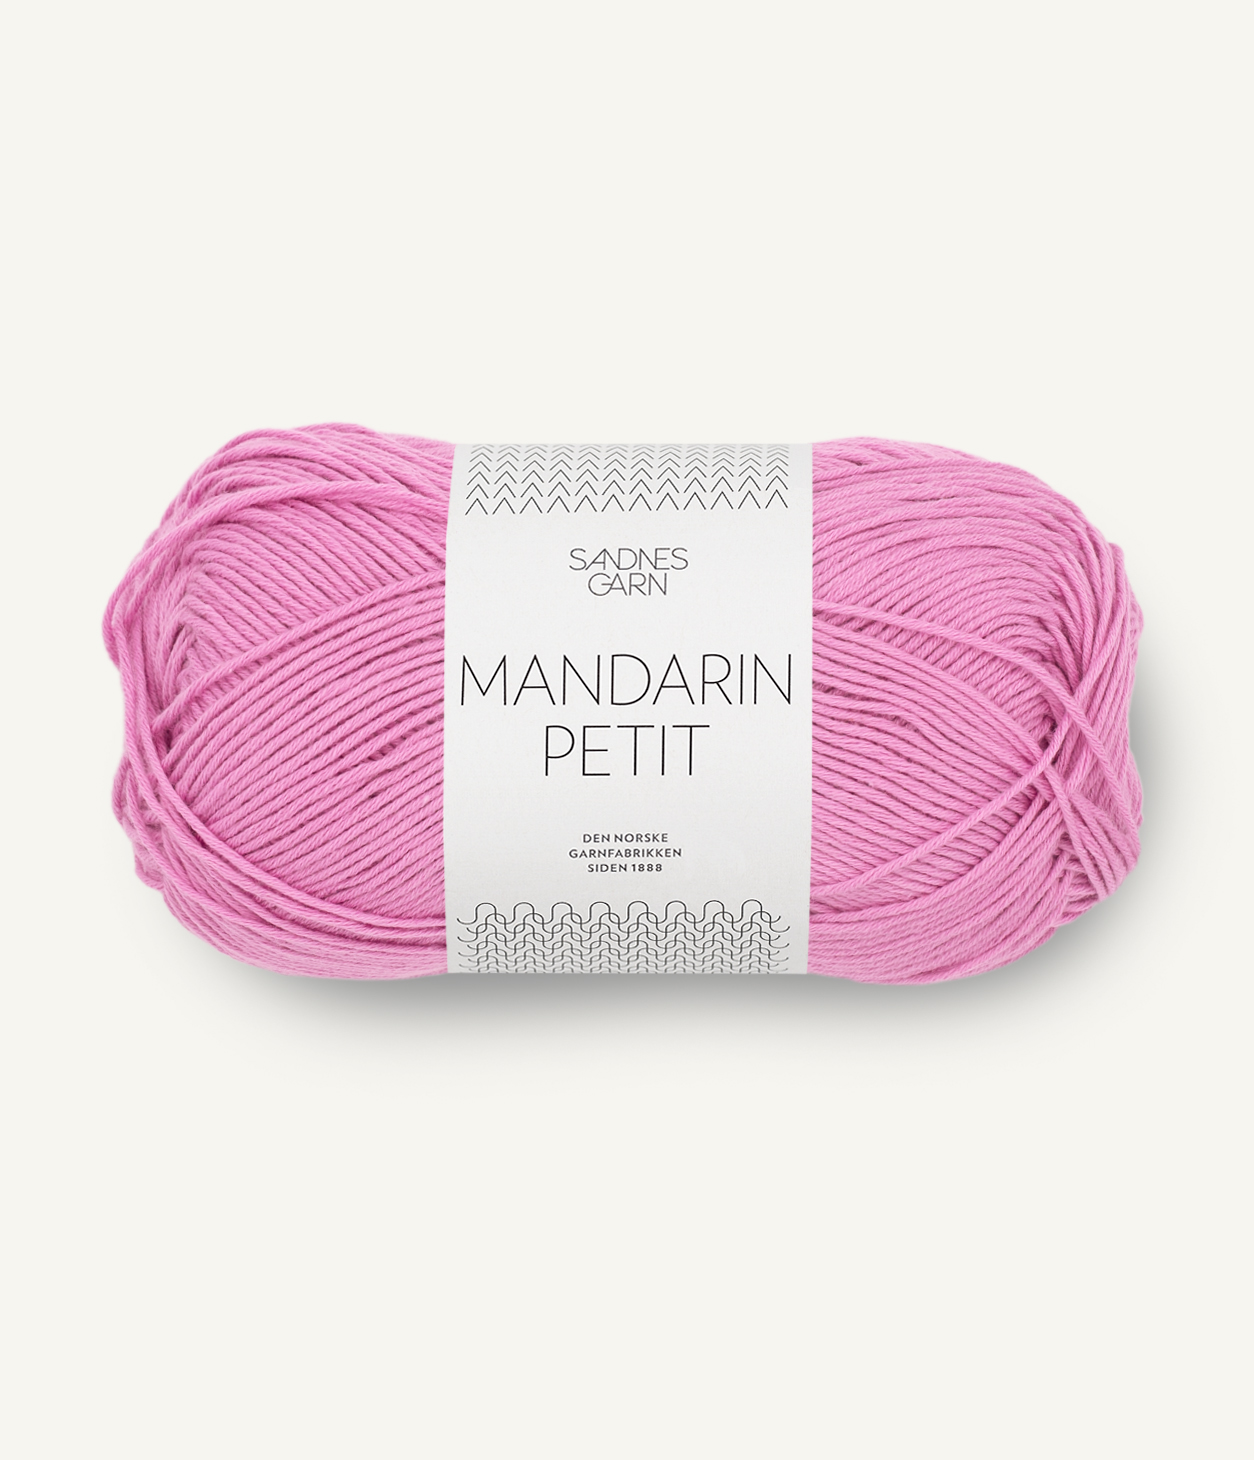 Mandarin Petit 4626 Shocking pink